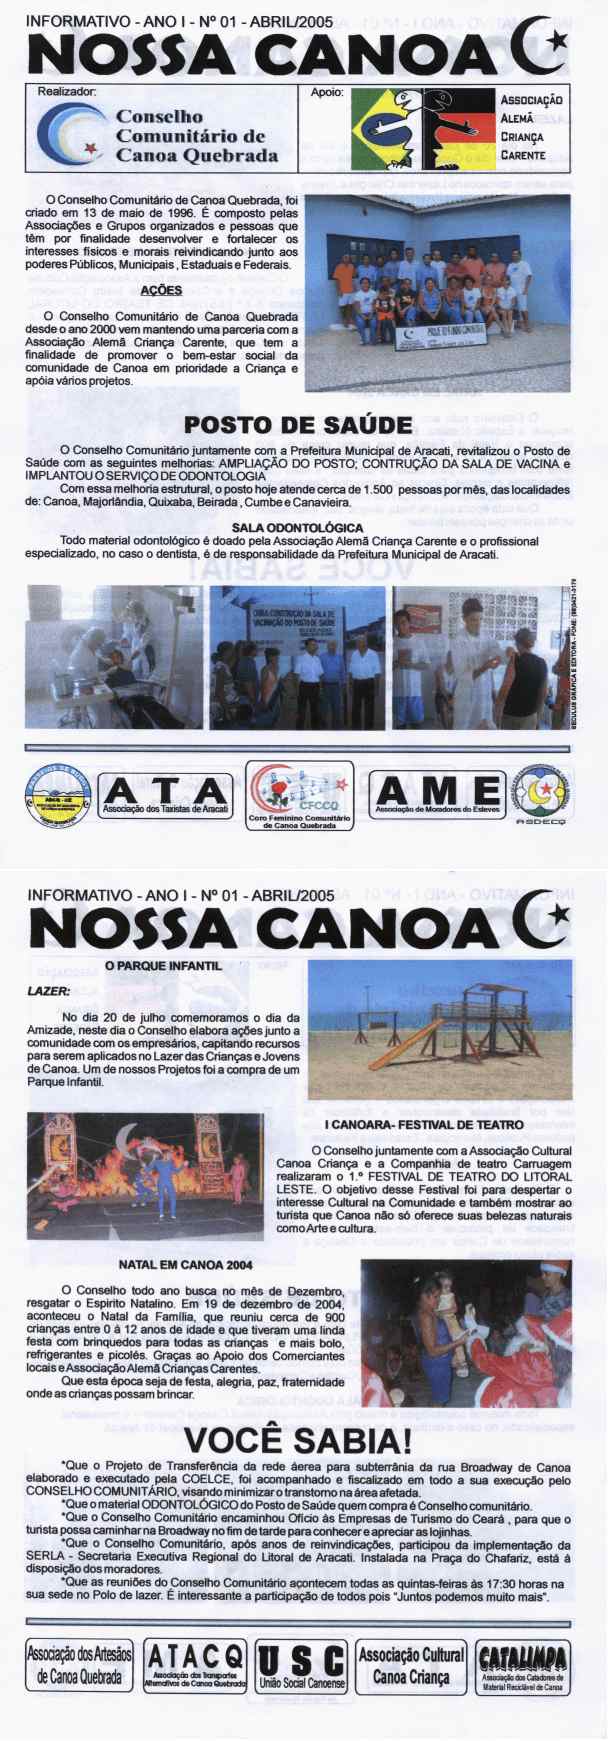 Informationsblatt Nossa Canoa